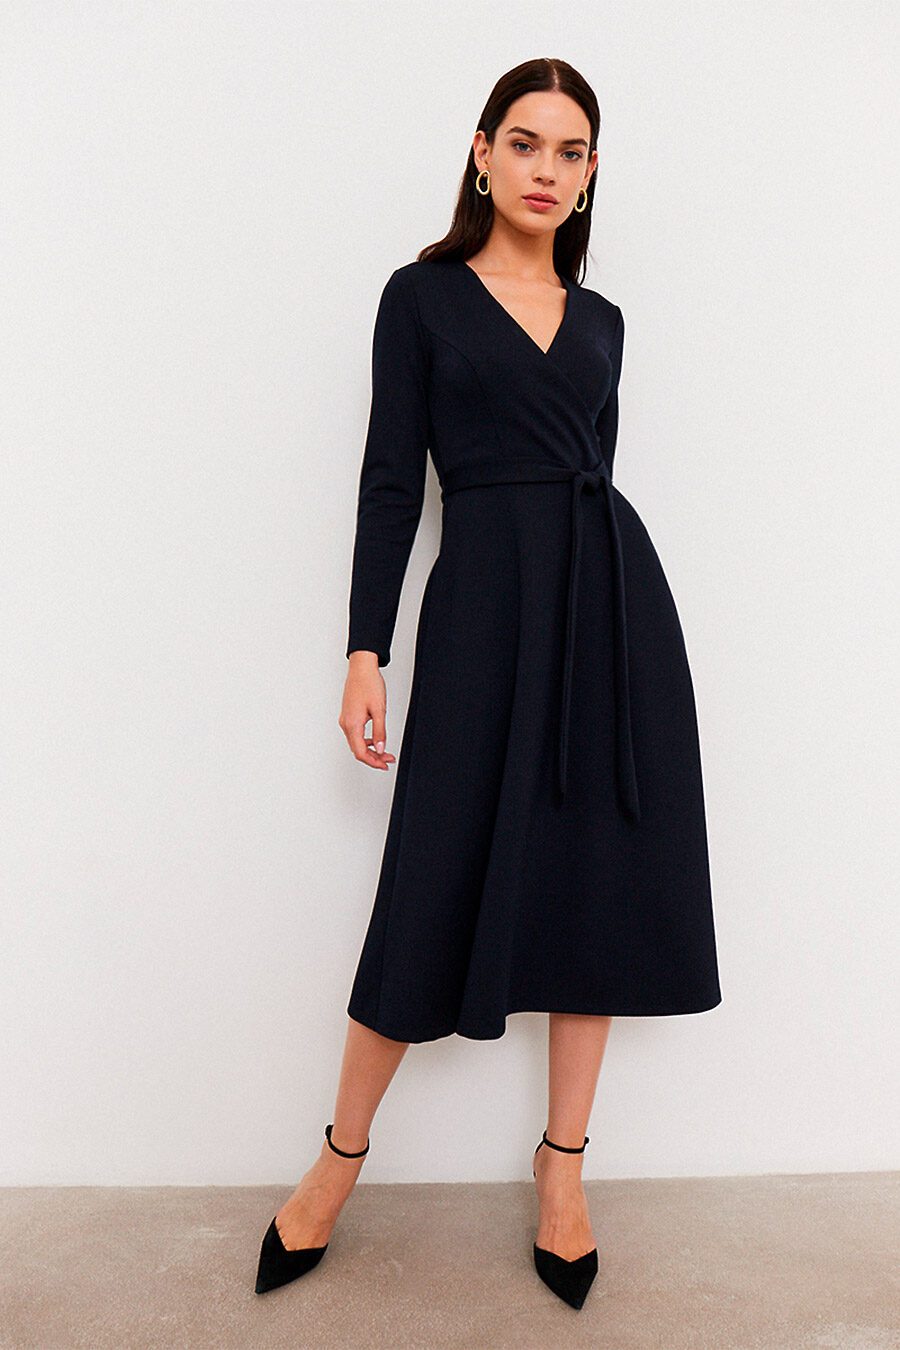 Платье для женщин VITTORIA VICCI 807676 купить оптом от производителя. Совместная покупка женской одежды в OptMoyo